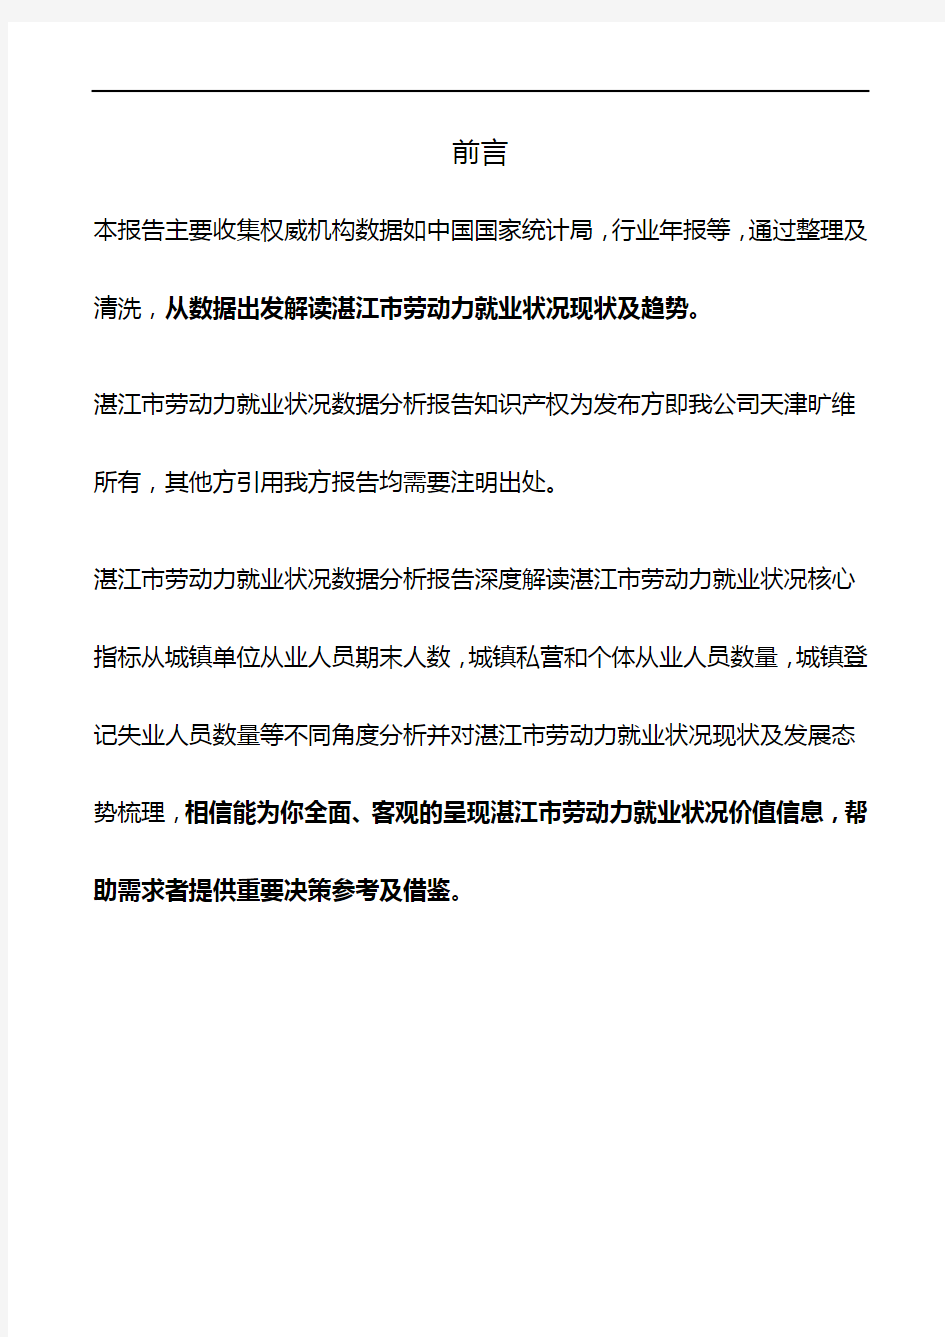 湛江市(全市)劳动力就业状况数据分析报告2019版